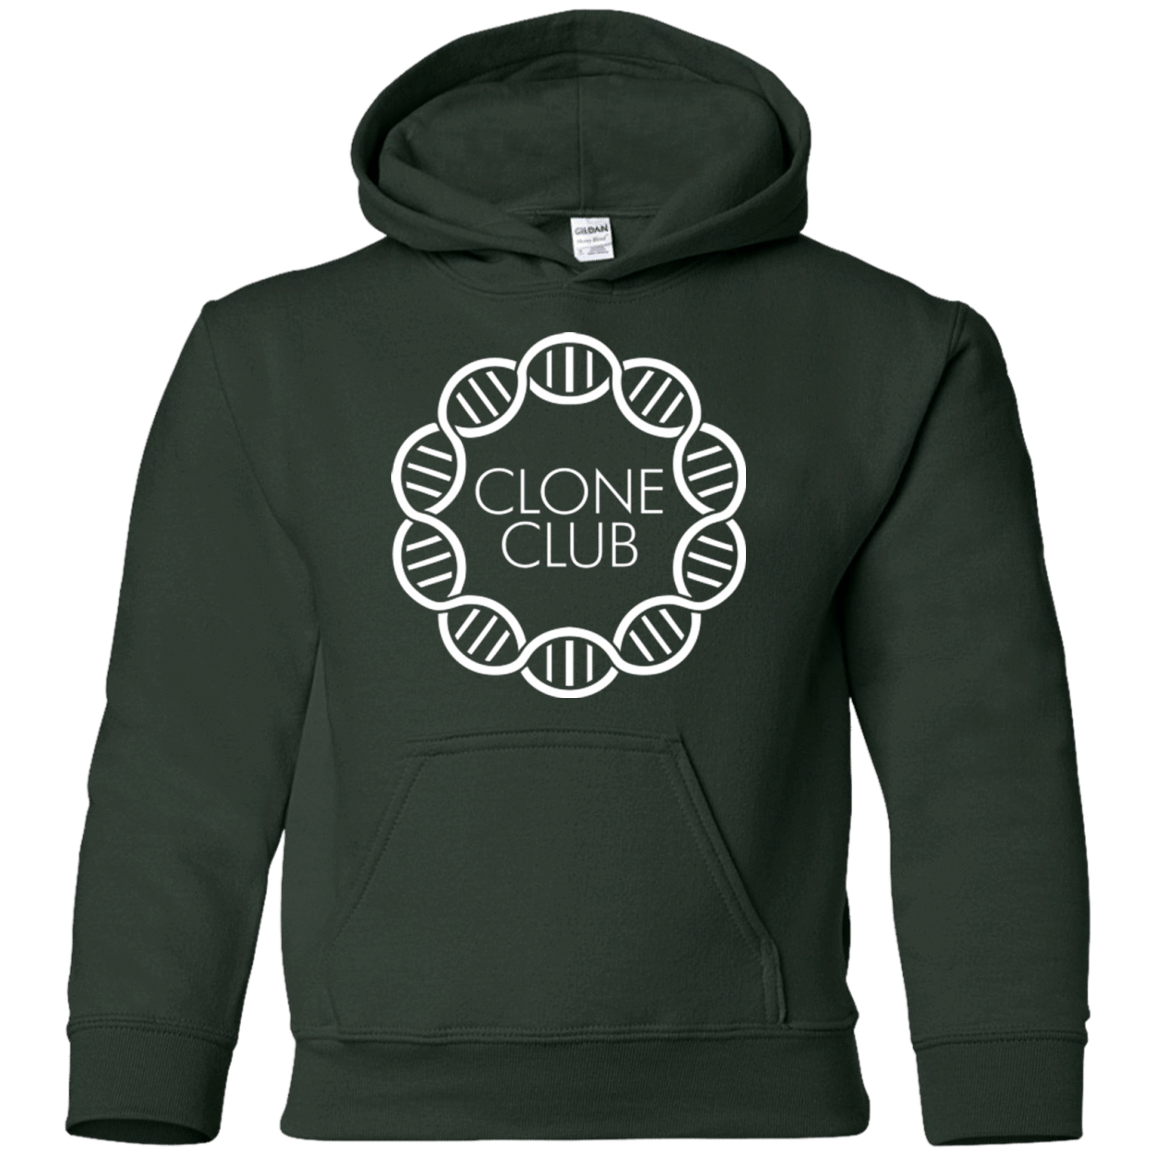 Sweatshirts Forest Green / YS Clone Club Youth Hoodie